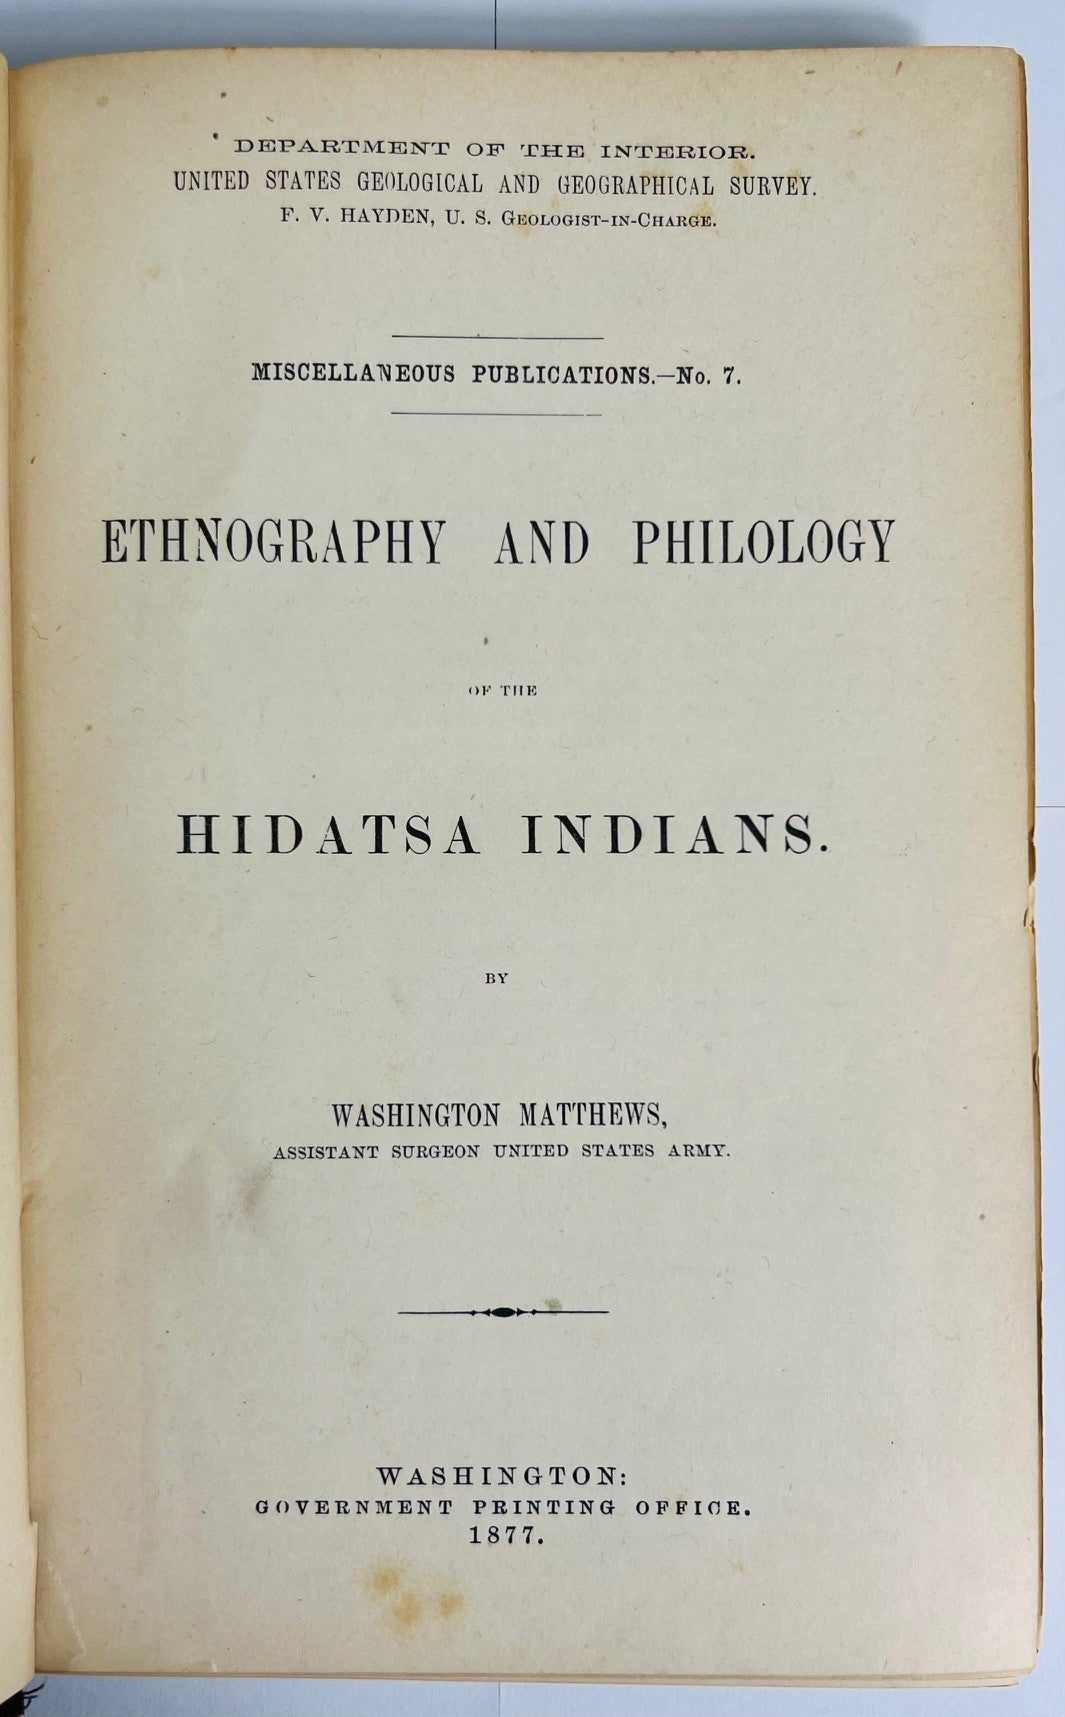 MATTHEWS, Washington. Ethnography and Philology of the Hidatsa Indians.